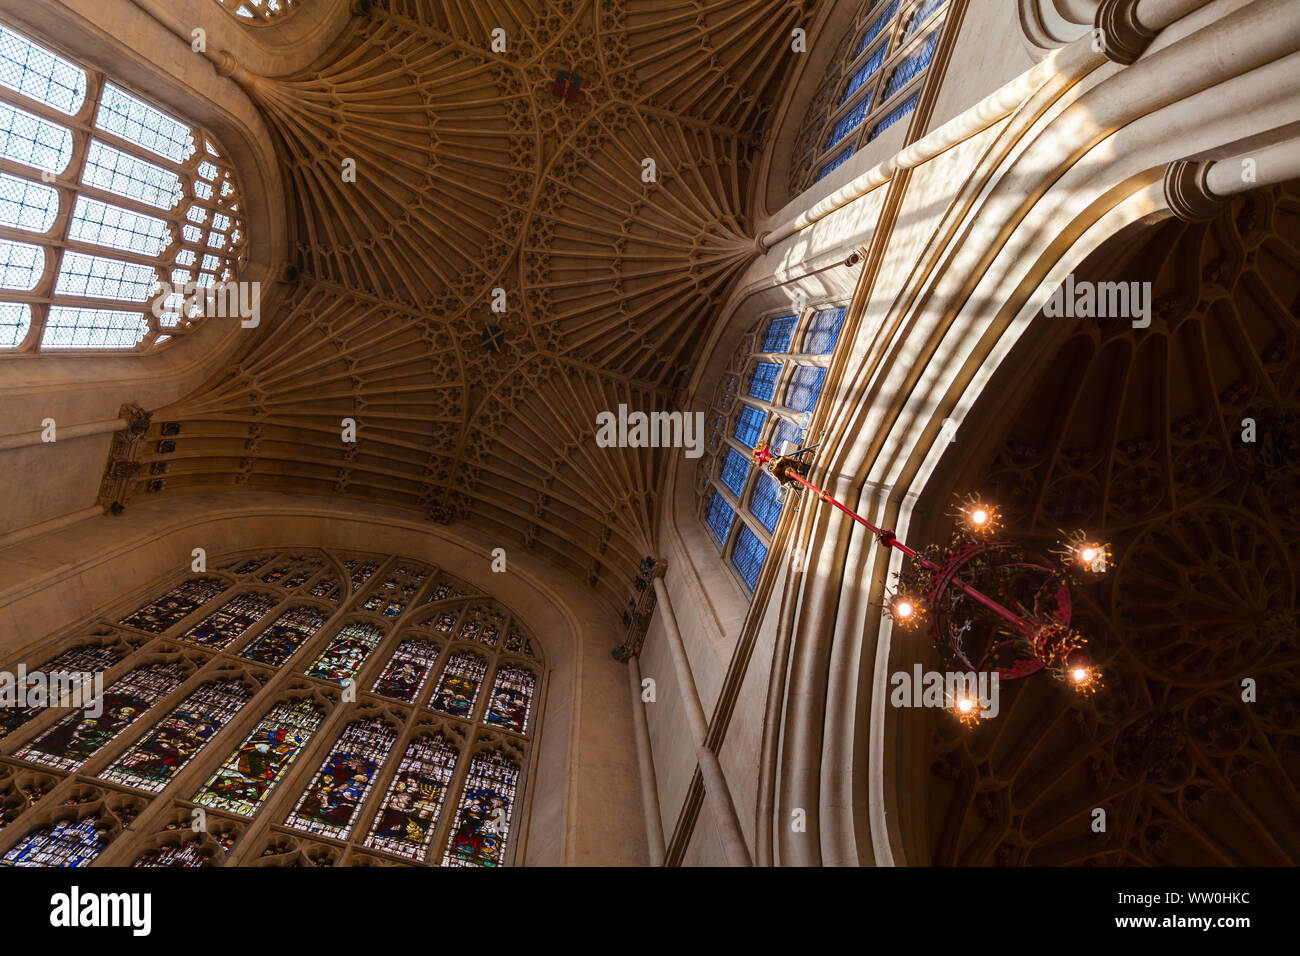 Bath, Regno Unito - 2 Novembre 2017: soffitto e finestre della chiesa abbaziale di San Pietro e San Paolo, comunemente noto come Abbazia di Bath Foto Stock